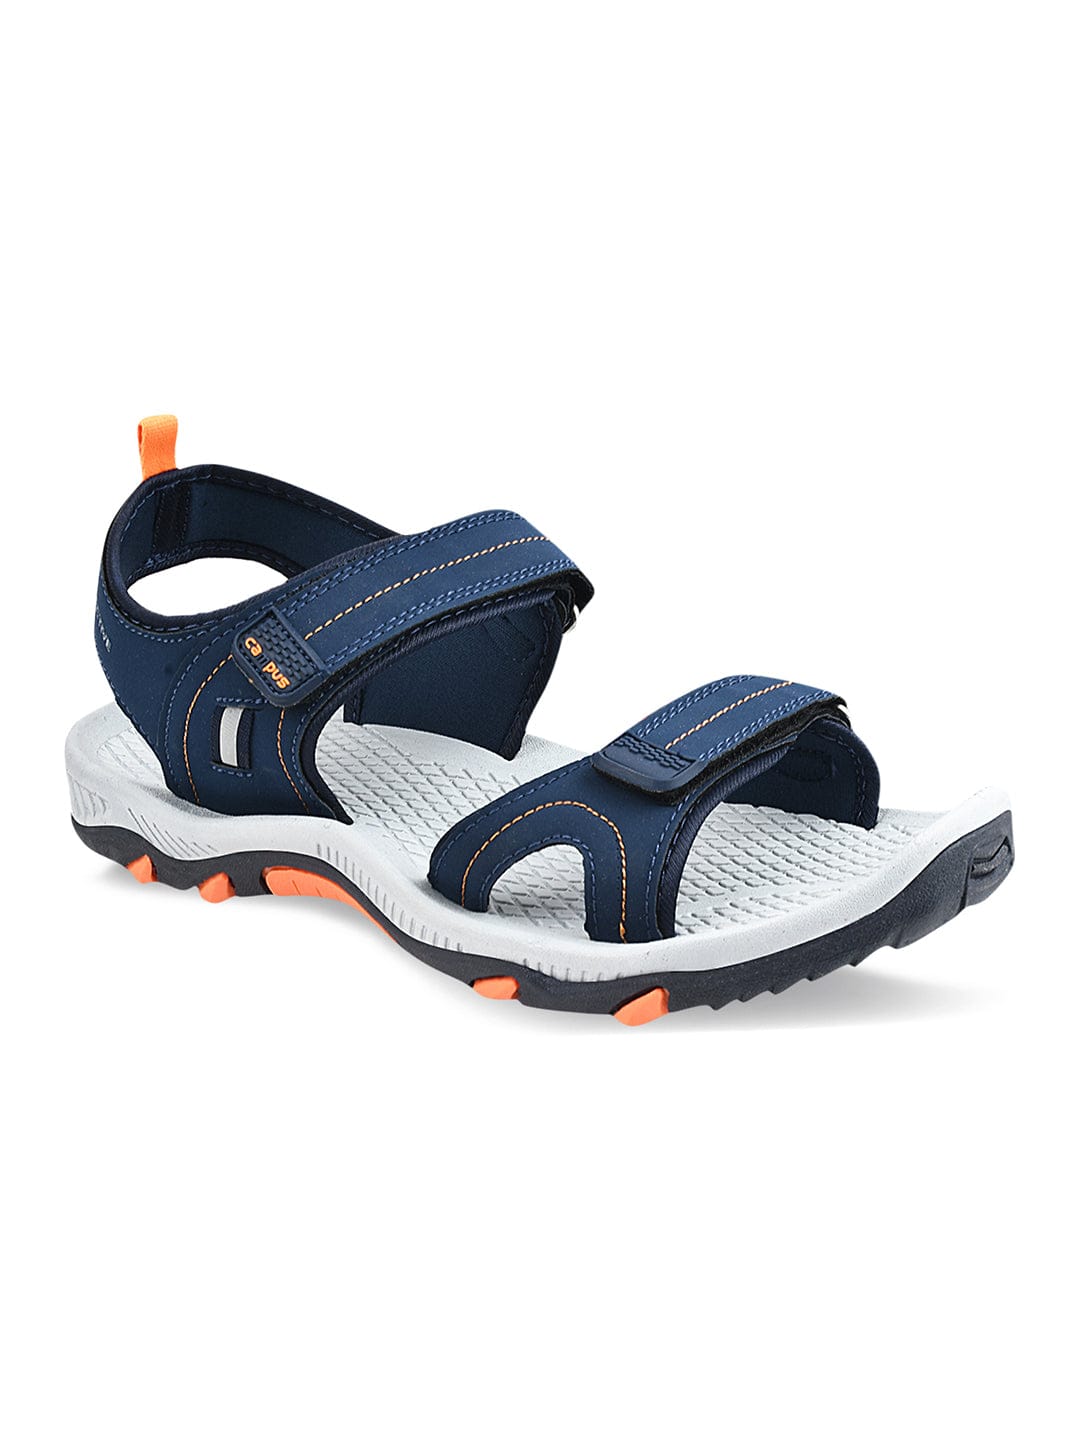 Buy GC-2203 Navy Men's Sandals online | Campus Shoes